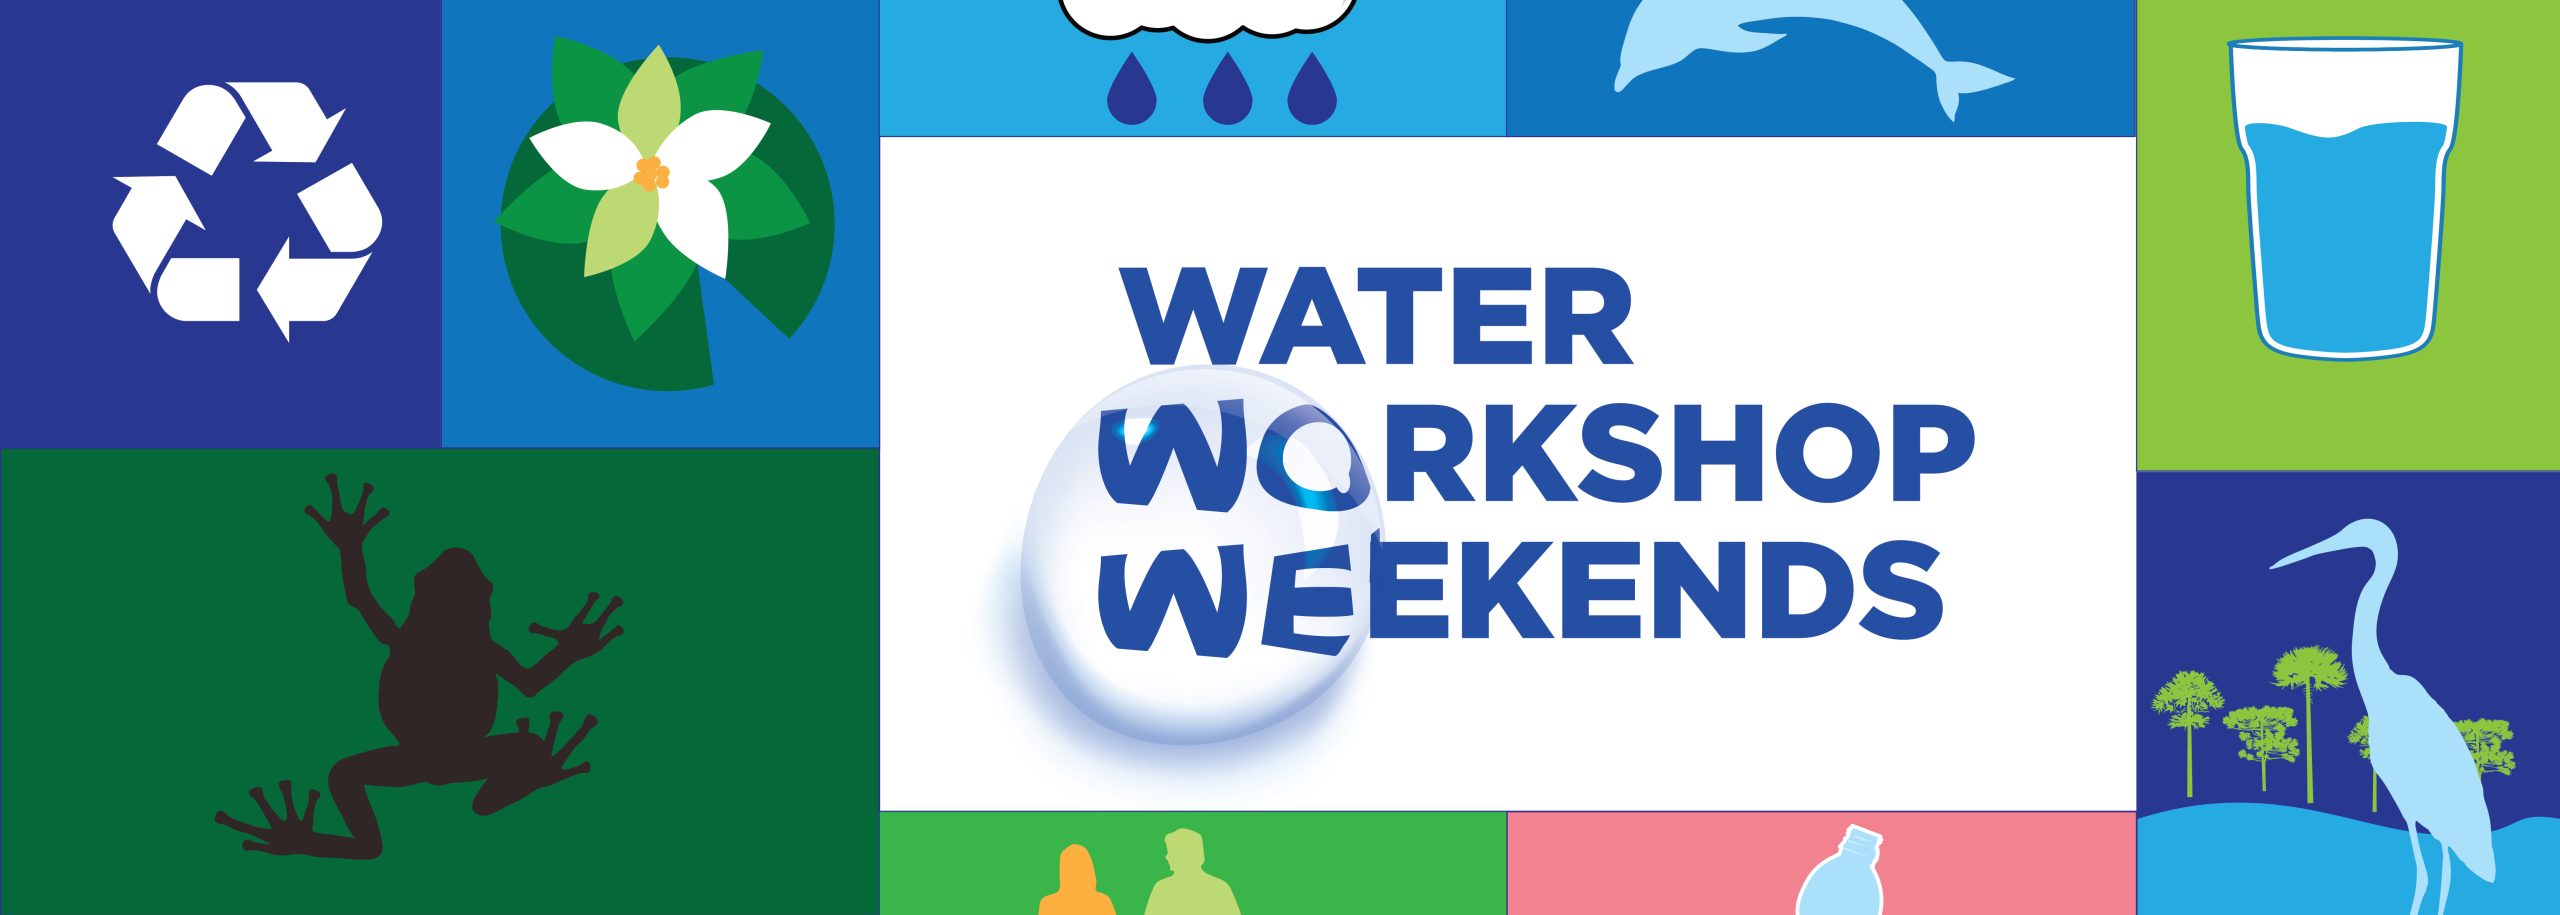 Water Workshop Weekends